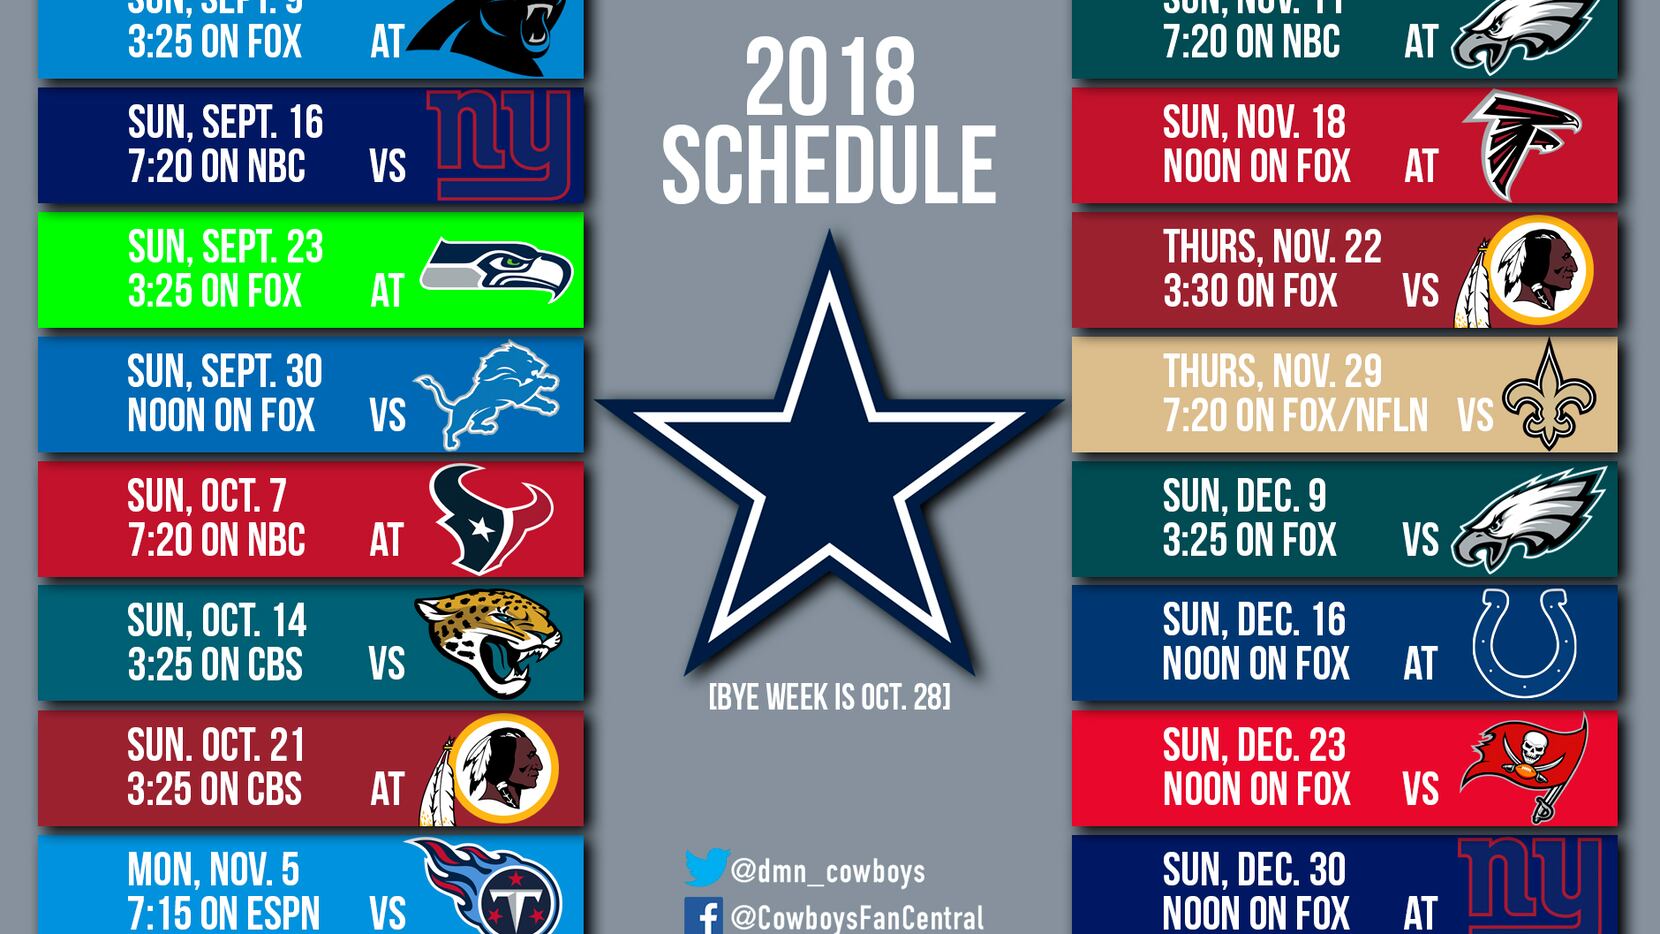 nbc playoff schedule